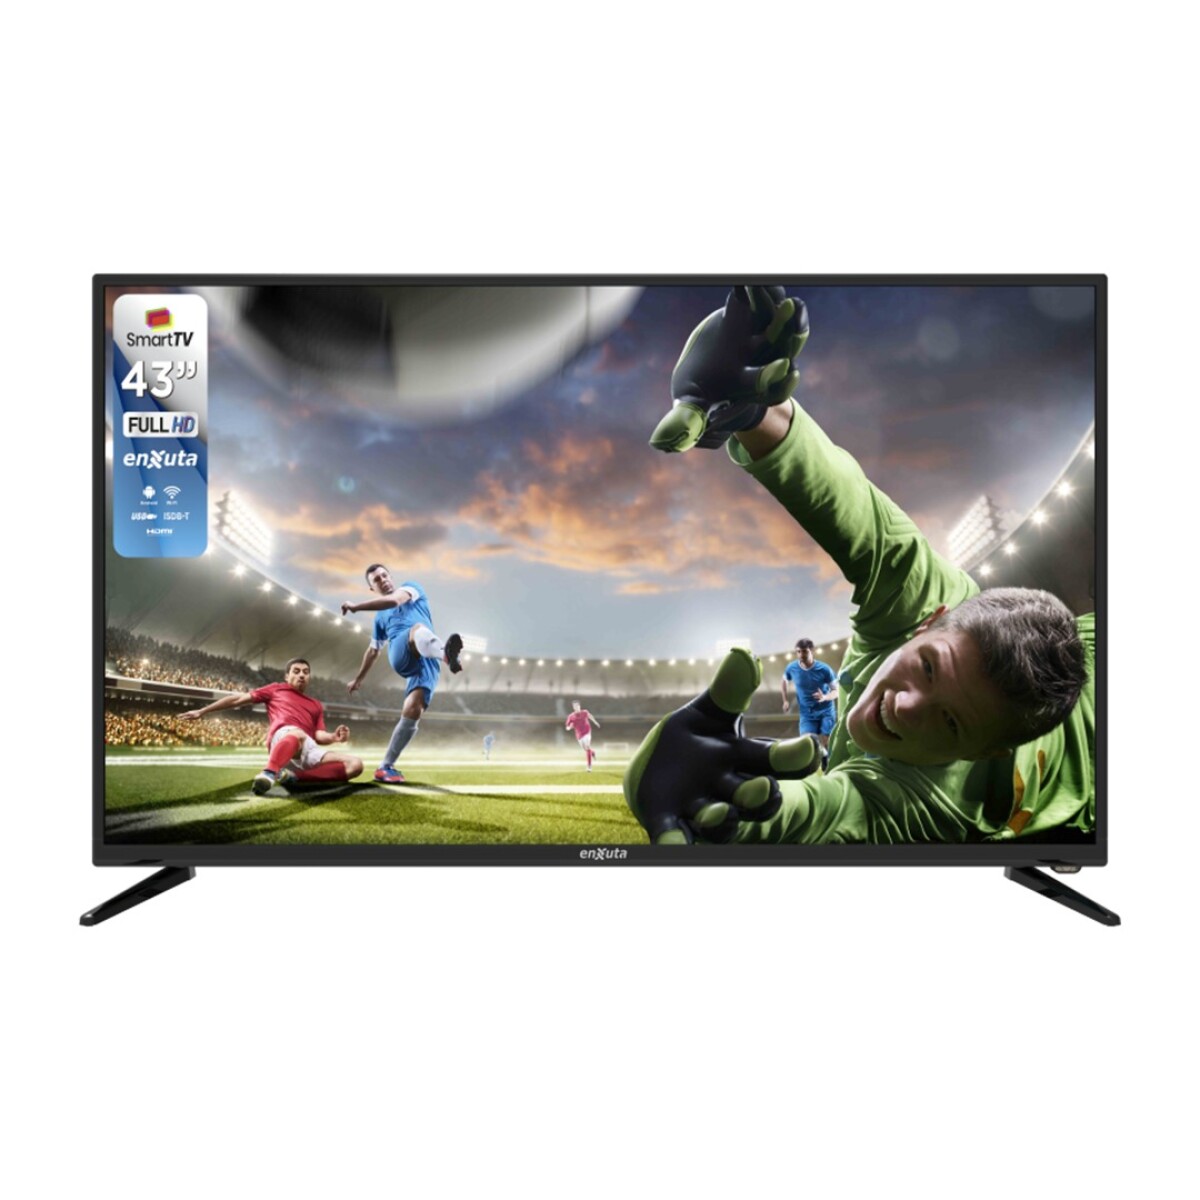 Smart Tv 43" Fhd Isbd Enxuta TLEDENX1243SDF2KA - 001 